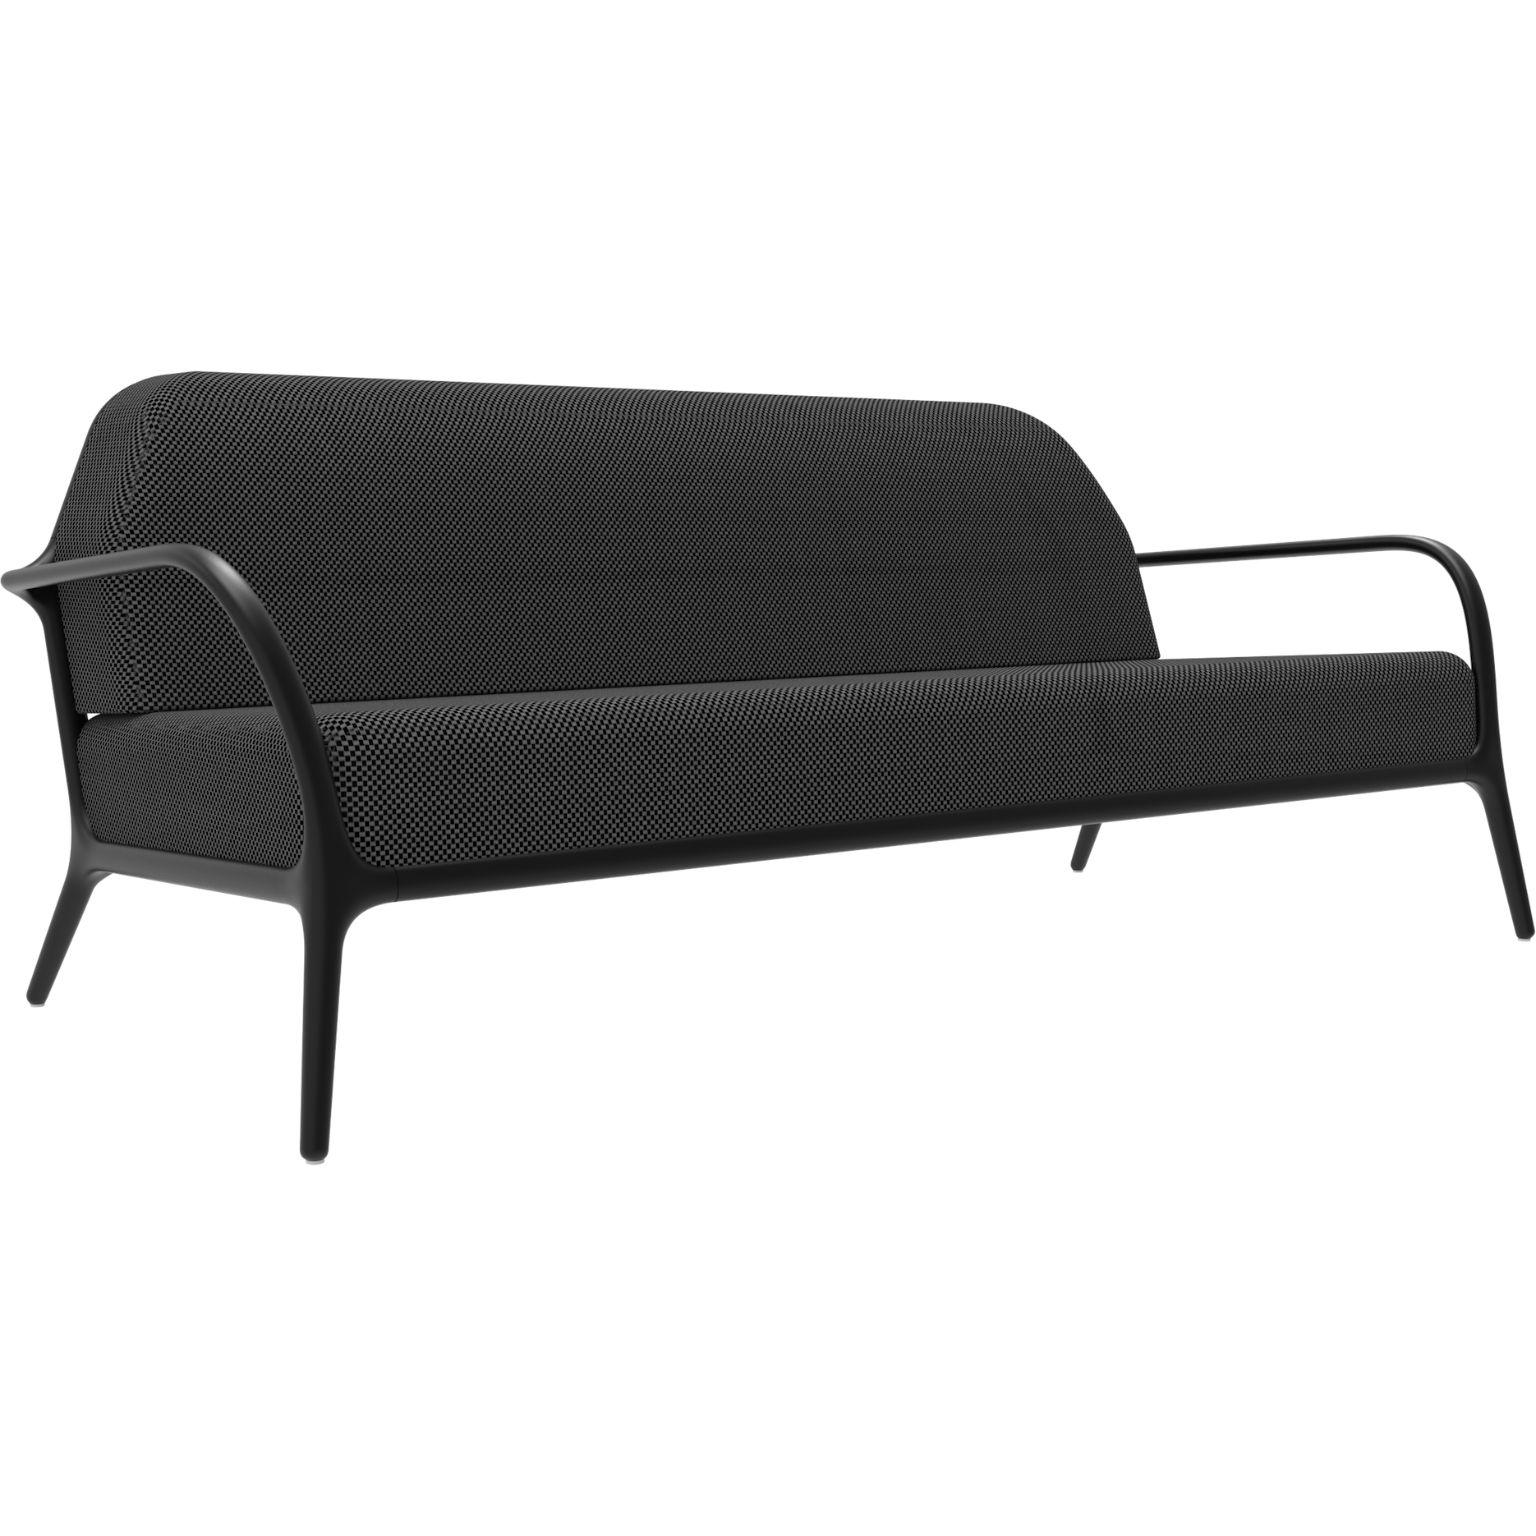 Xaloc schwarzes sofa von MOWEE
Abmessungen: T100 x B200 x H81 cm (Sitzhöhe 42 cm)
MATERIAL: Aluminium, Textil
Gewicht: 46 kg
Auch in verschiedenen Farben und Ausführungen erhältlich. 

 Xaloc synthetisiert die Linien der Inneneinrichtung und